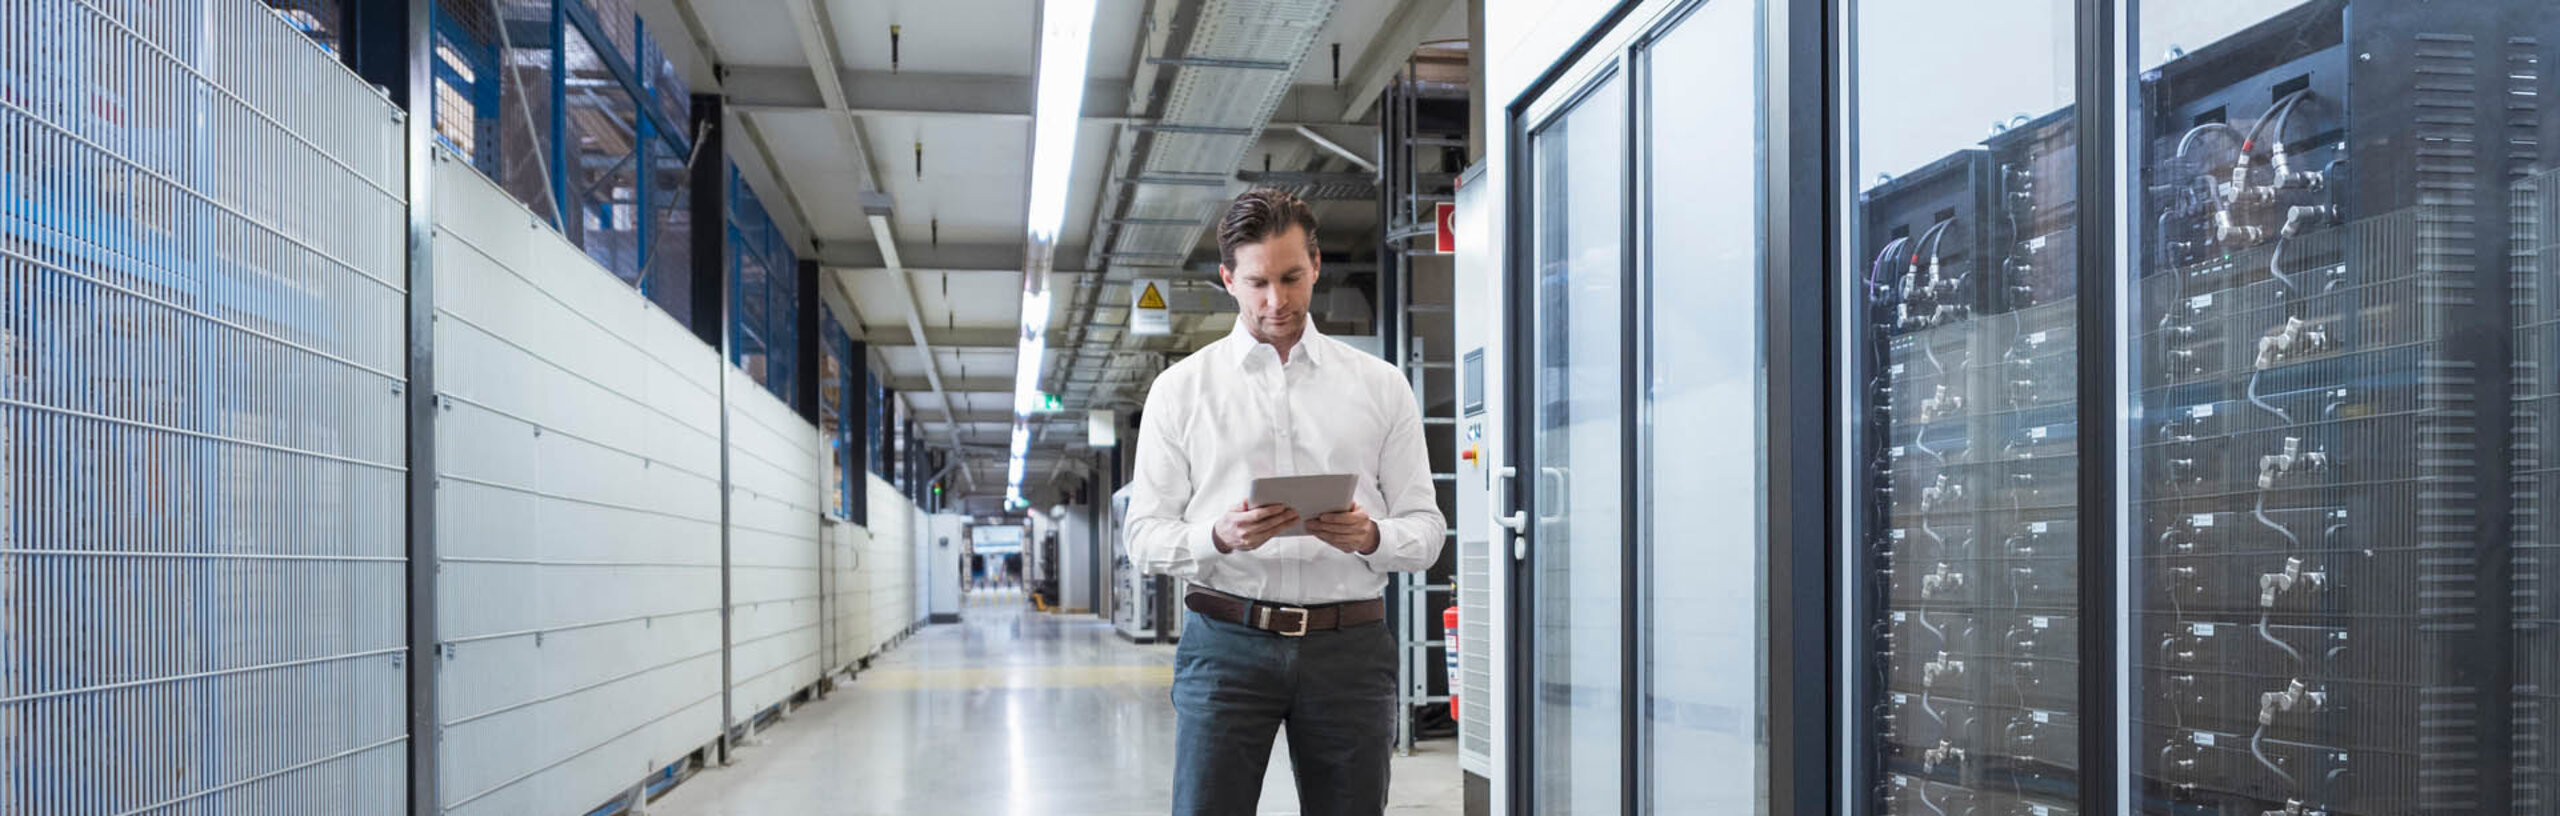 Ein Mann im weißen Hemd steht mit einem Tablet neben einem Serverbereich in einer Fabrik.